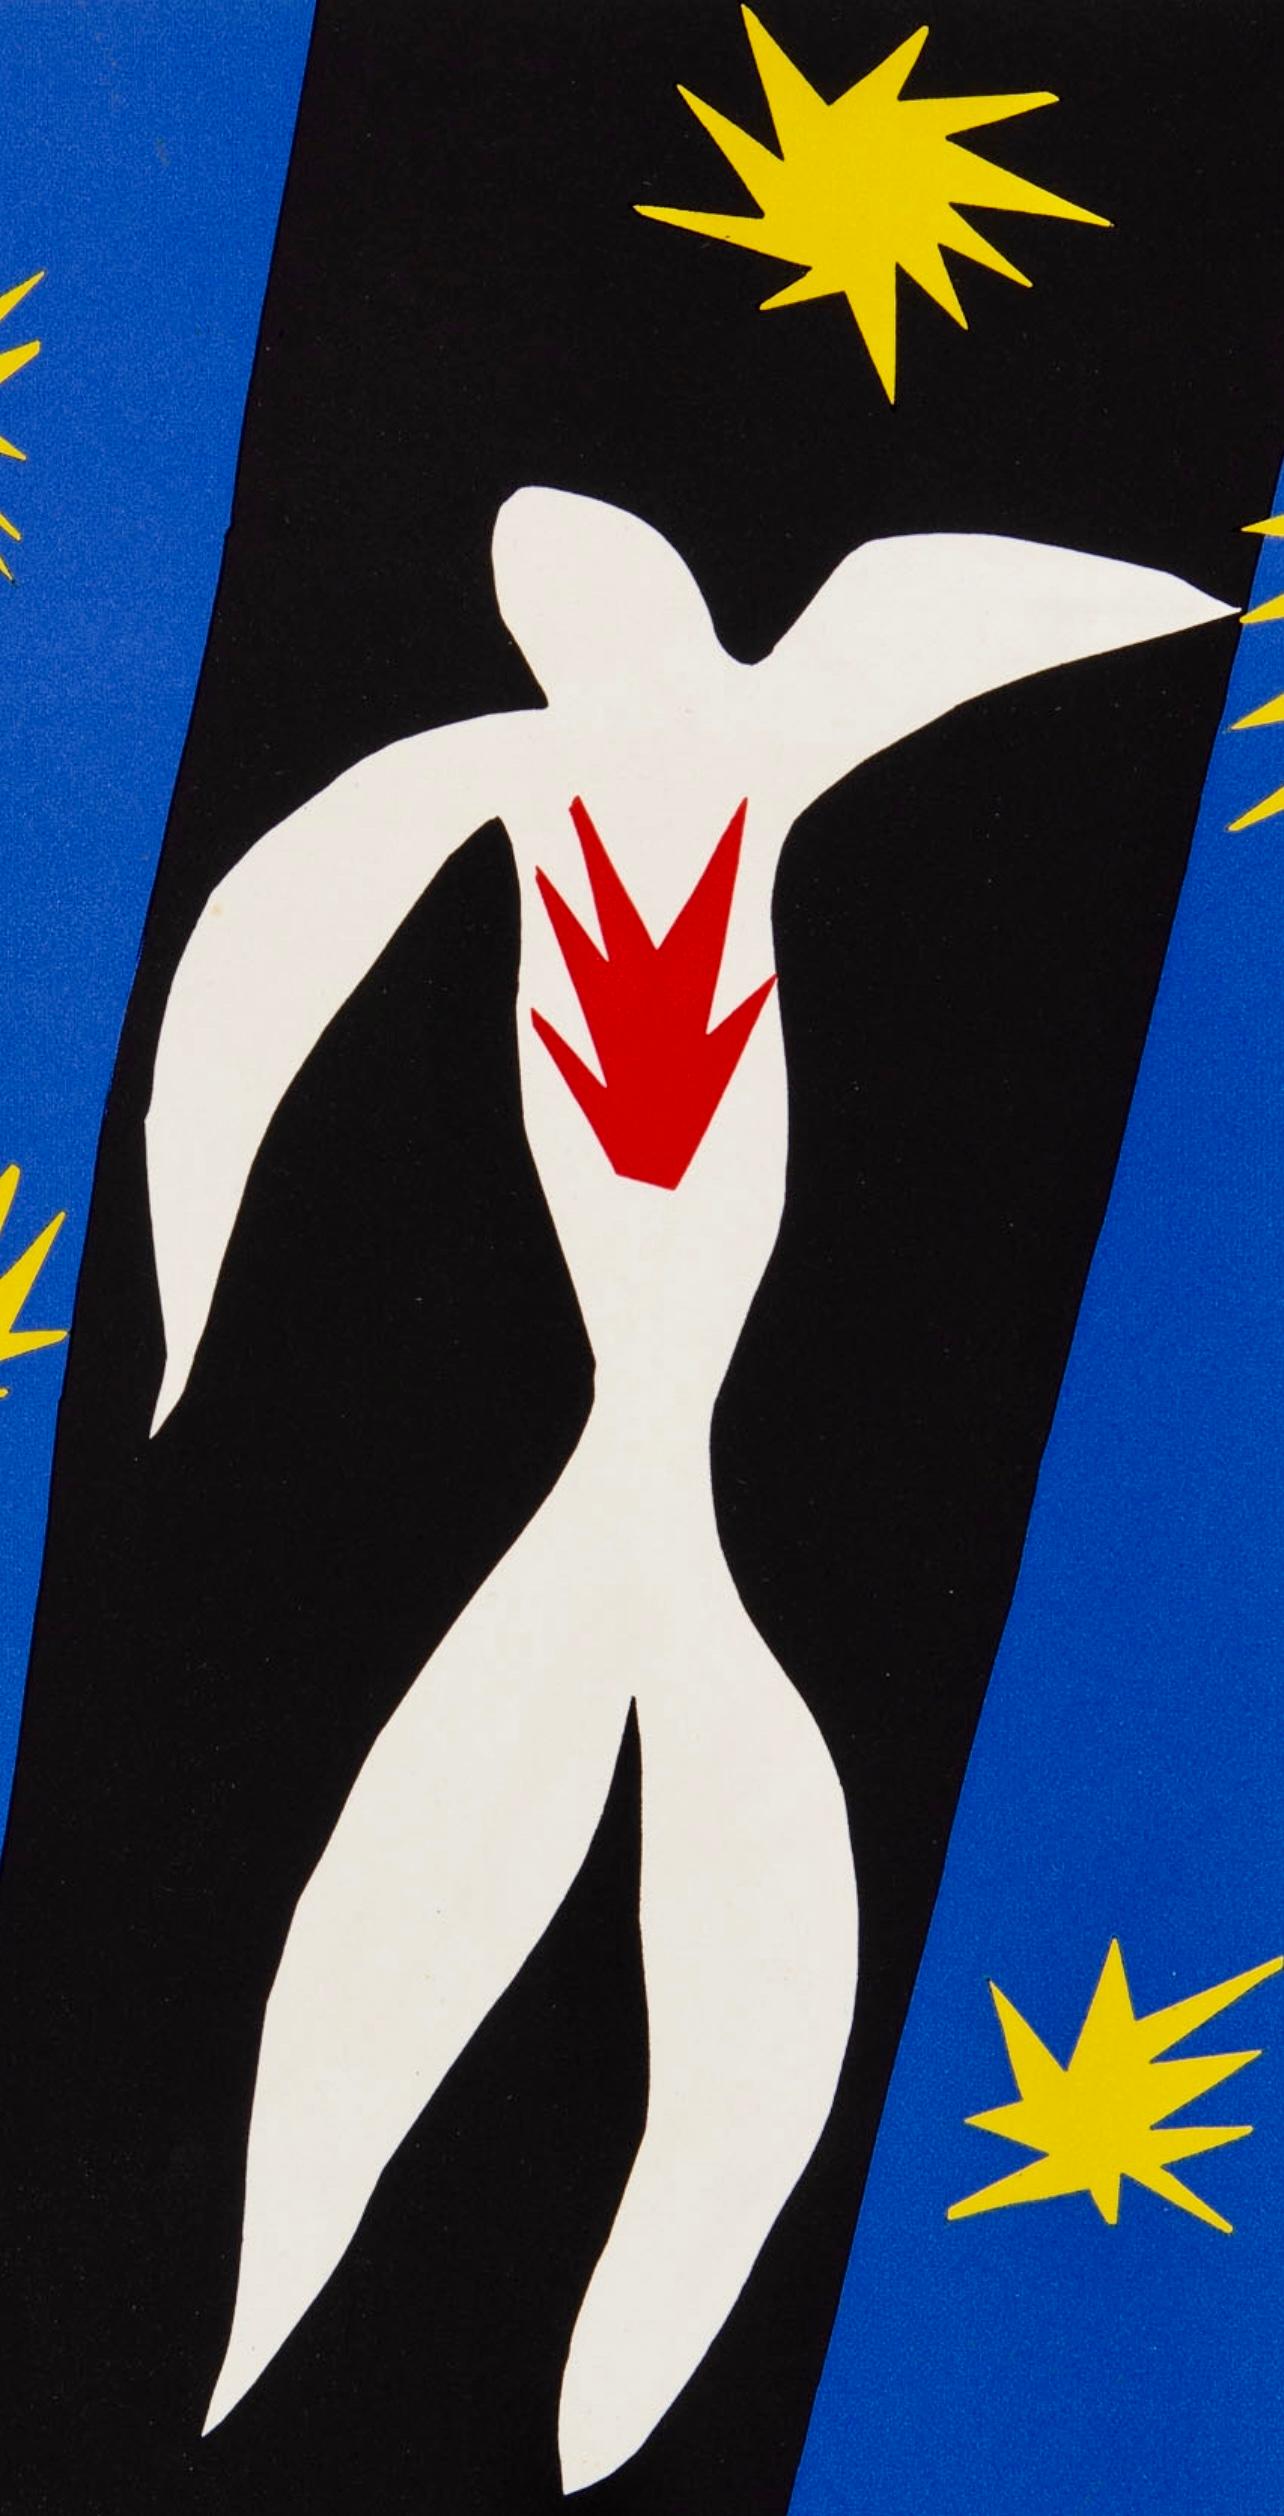 Matisse, La Chute d'Icare (Duthuit 74), Verve: Revue Artistique (after) - Print by Henri Matisse